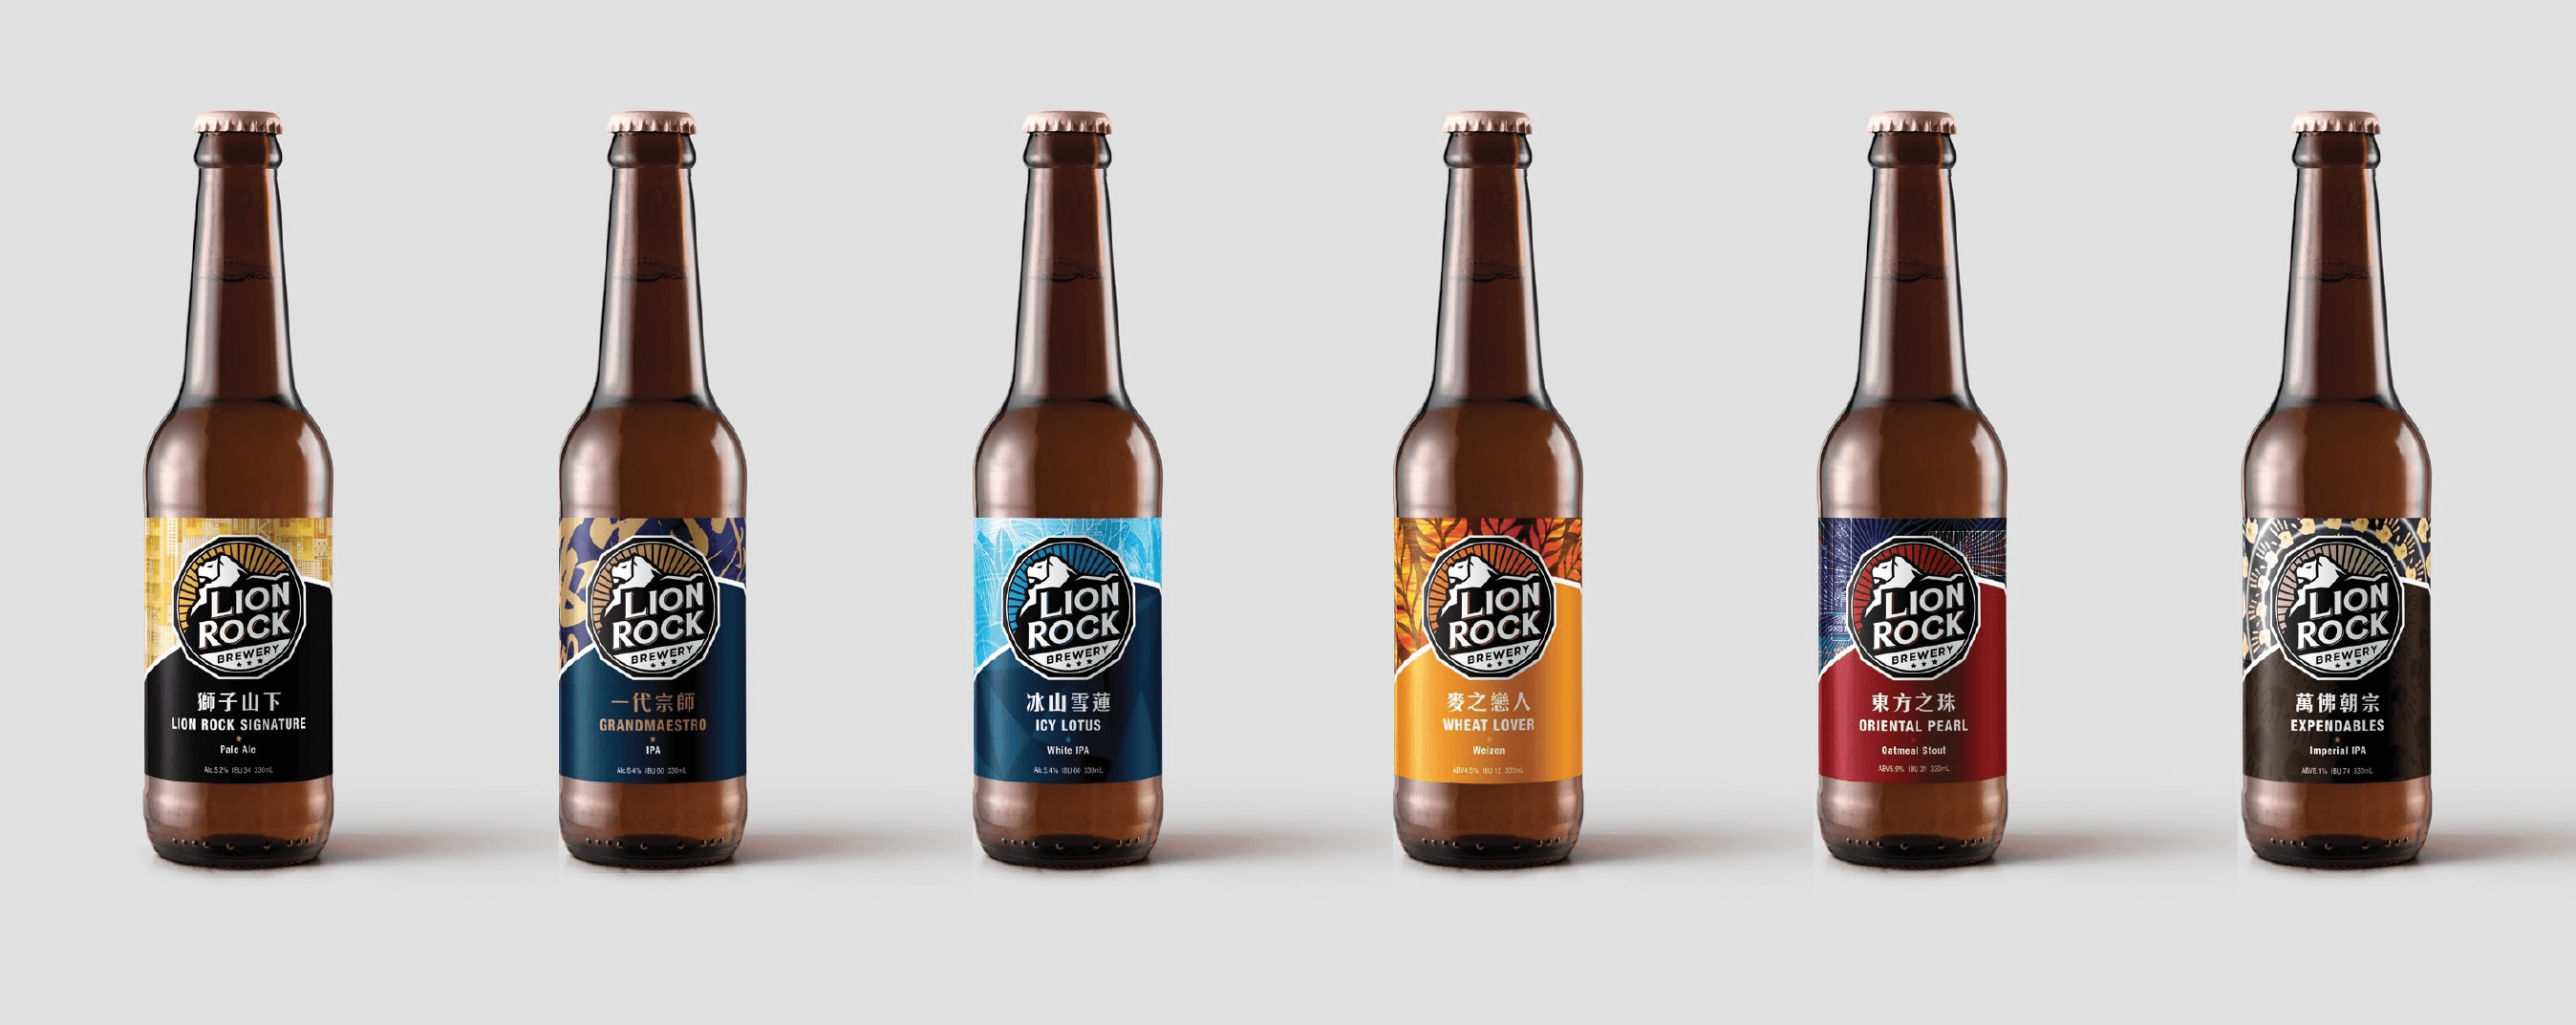 totalgroups branding hk lion rock brewery bottle packaging design label design